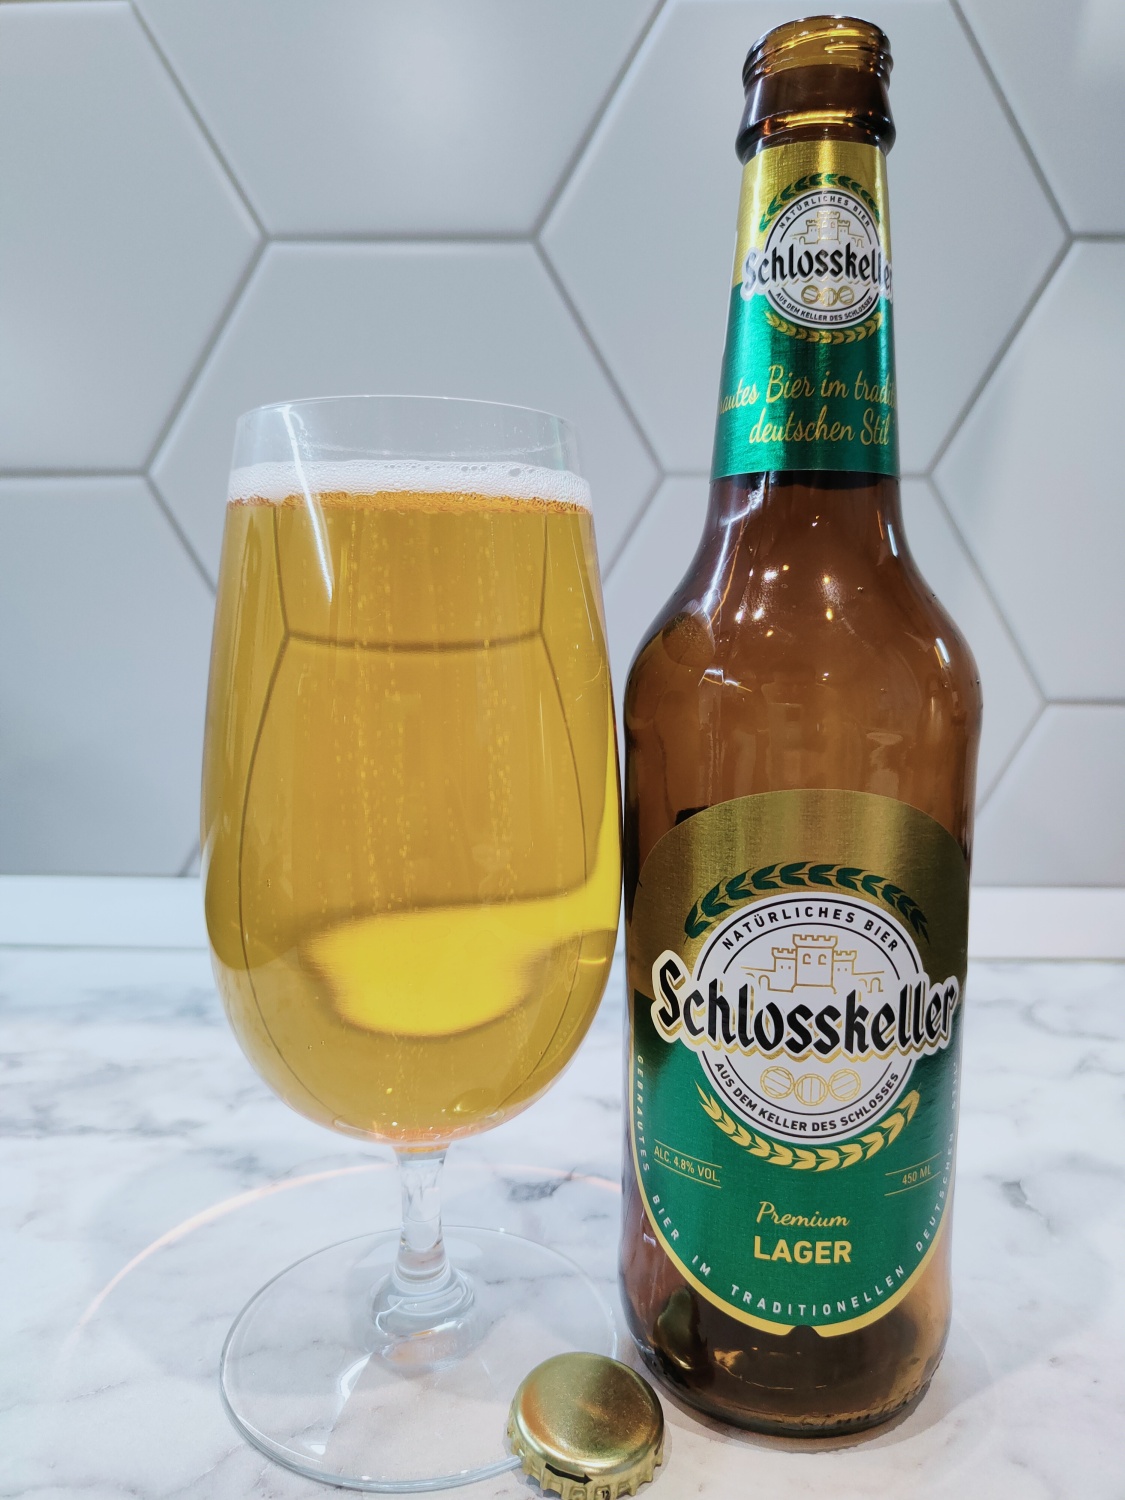 Schlosskeller пиво. Schlosskeller Pilsener пиво светлое. Пиво Алтайское белое. Пиво завода белый Кремль.